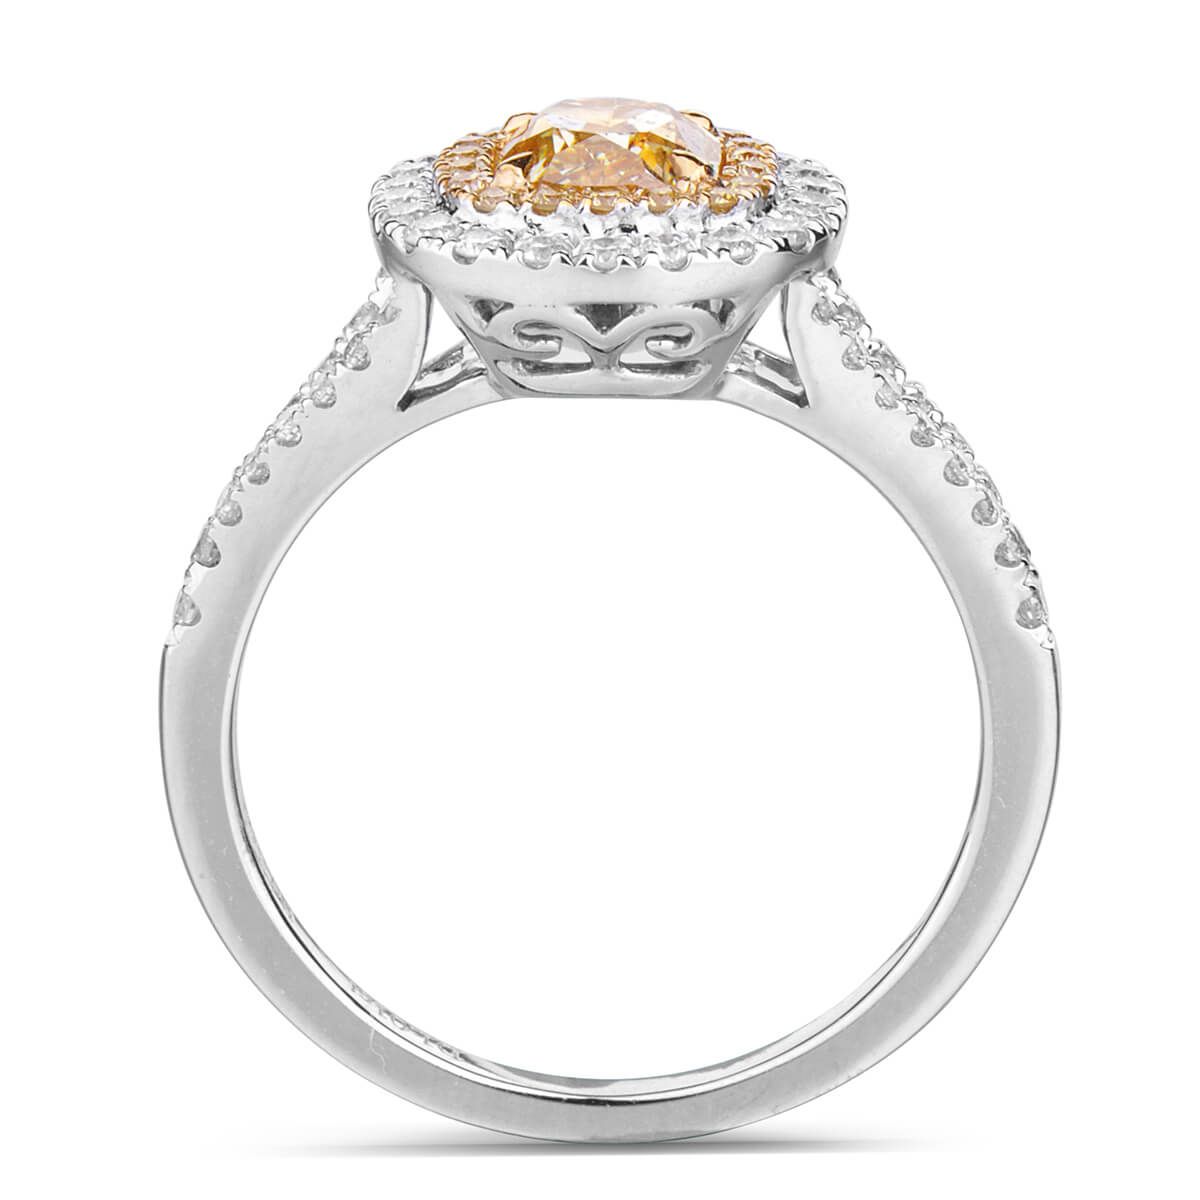 Fancy Intense Yellow Diamond Ring, 1.01 Ct. (1.43 Ct. TW), Cushion shape, GIA Certified, 5171222546